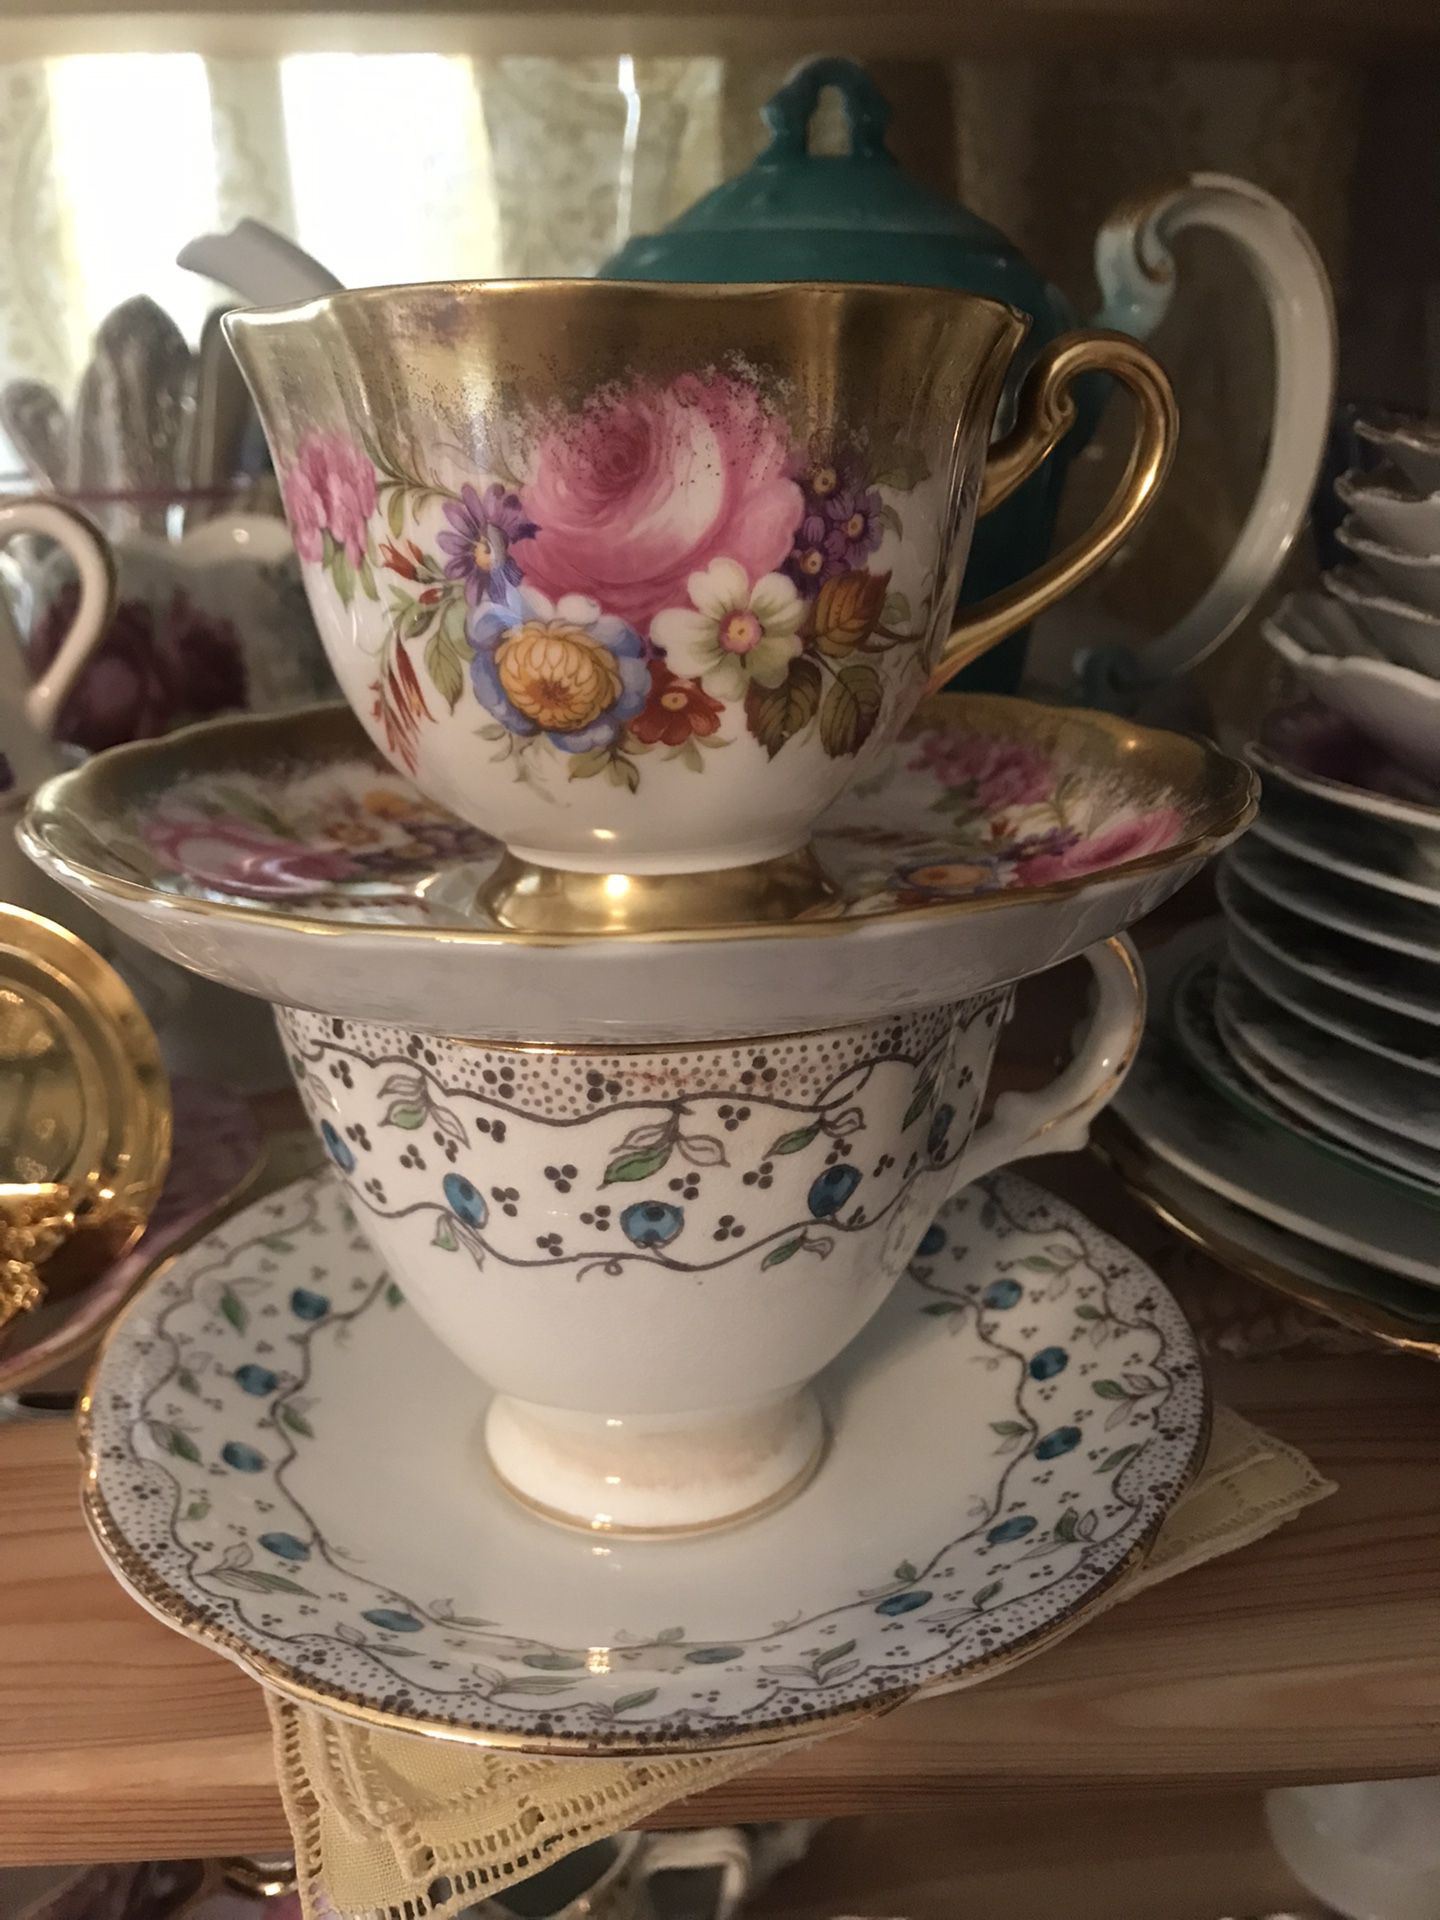 Vintage Silverware & Teacups 🌸🌸🍃